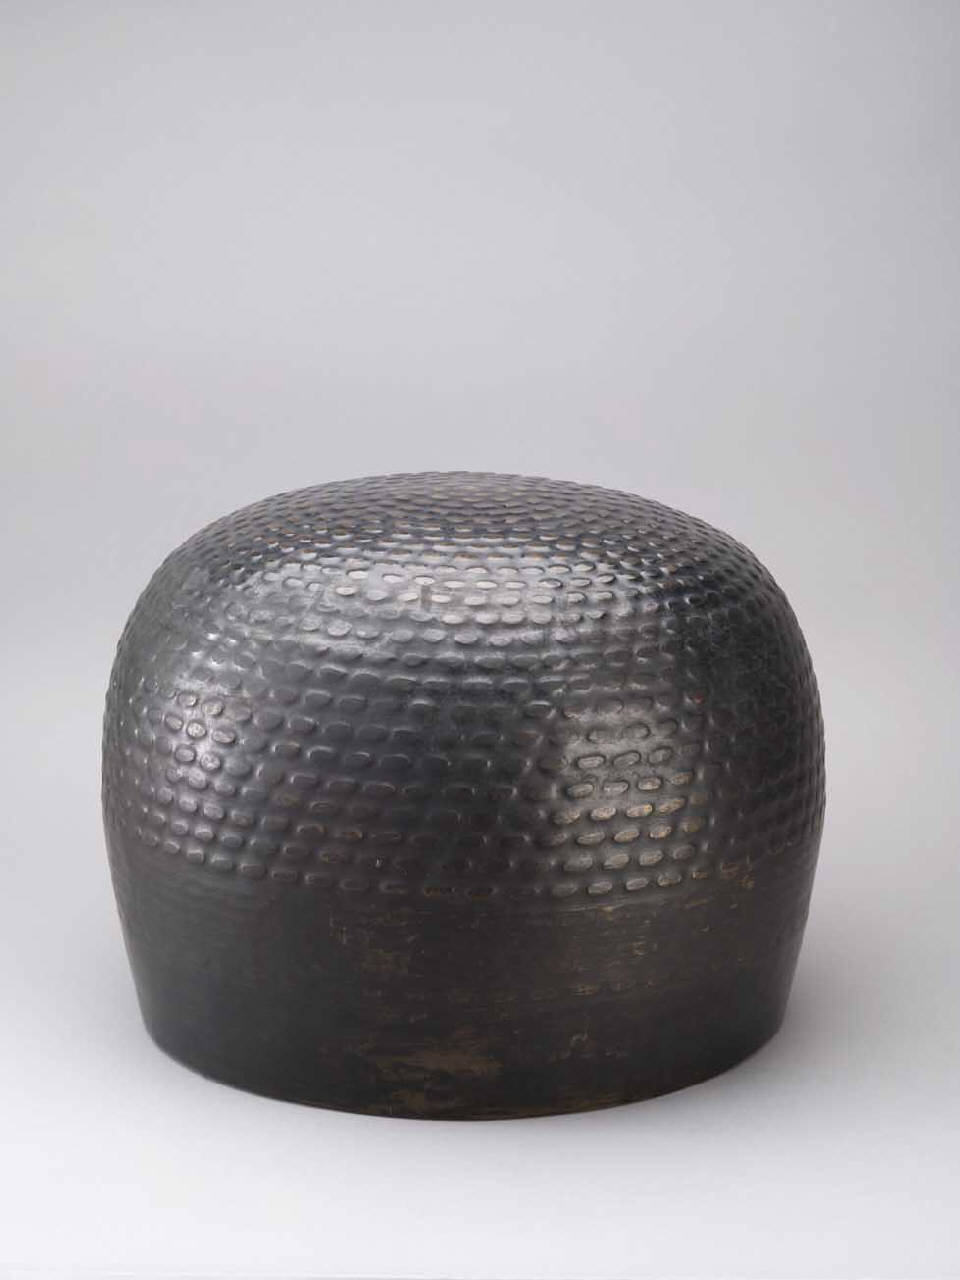 motivi decorativi geometrici a tondi e ovali (campana) - manifattura giapponese (secc. XVIII/ XIX)